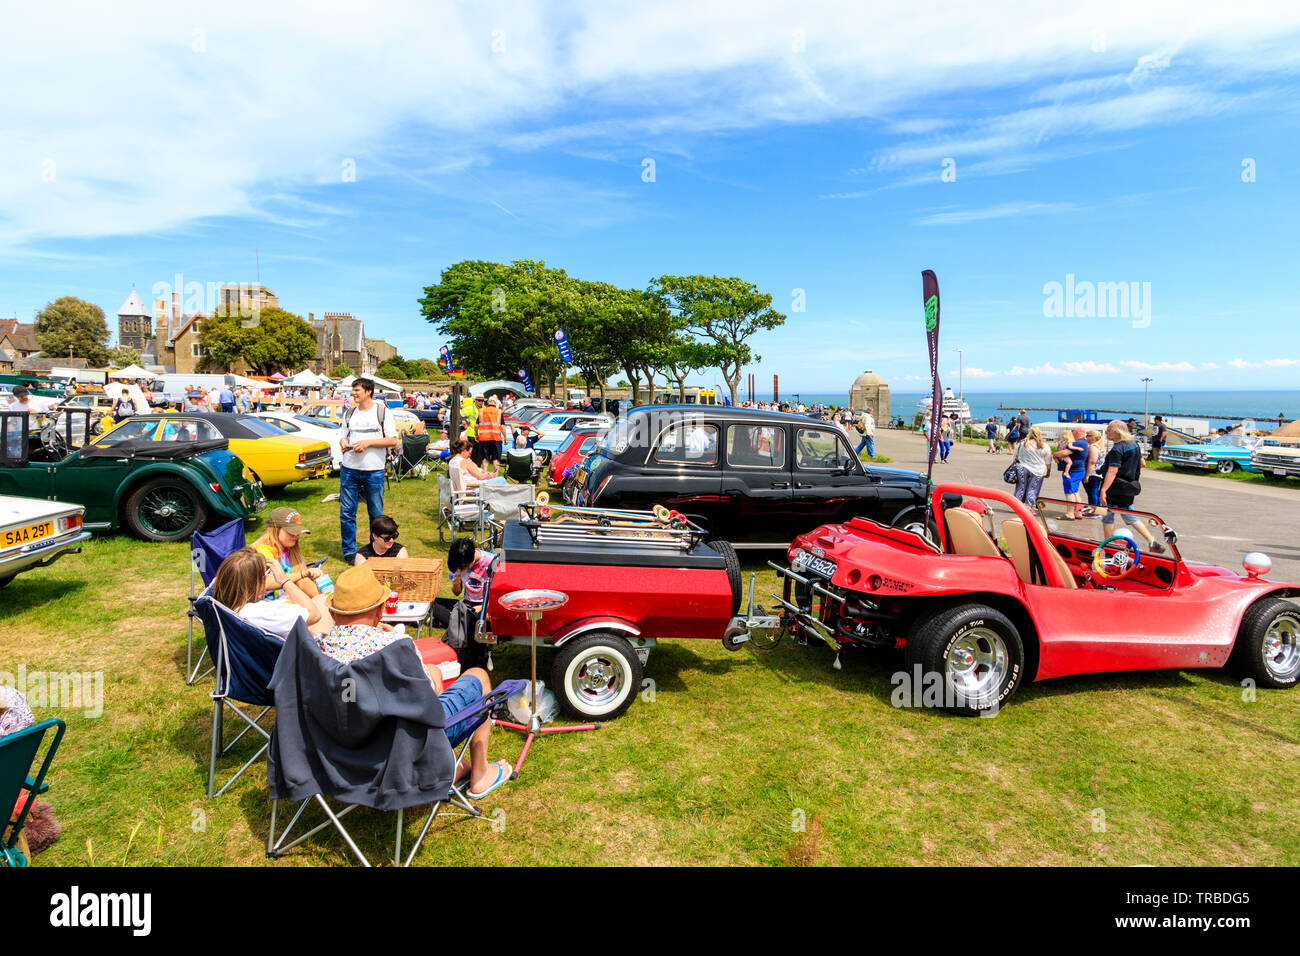 Das 38. Jahr der jährliche Schaufel und Spaten Classic Car Run von Canterbury nach Ramsgate Strandpromenade. Klassische Autos, alte und moderne, in Reihen auf dem Rasen geparkt mit Menschen zu Fuß rund um Ihre Anzeige auf hellen, sonnigen Tag. Stockfoto